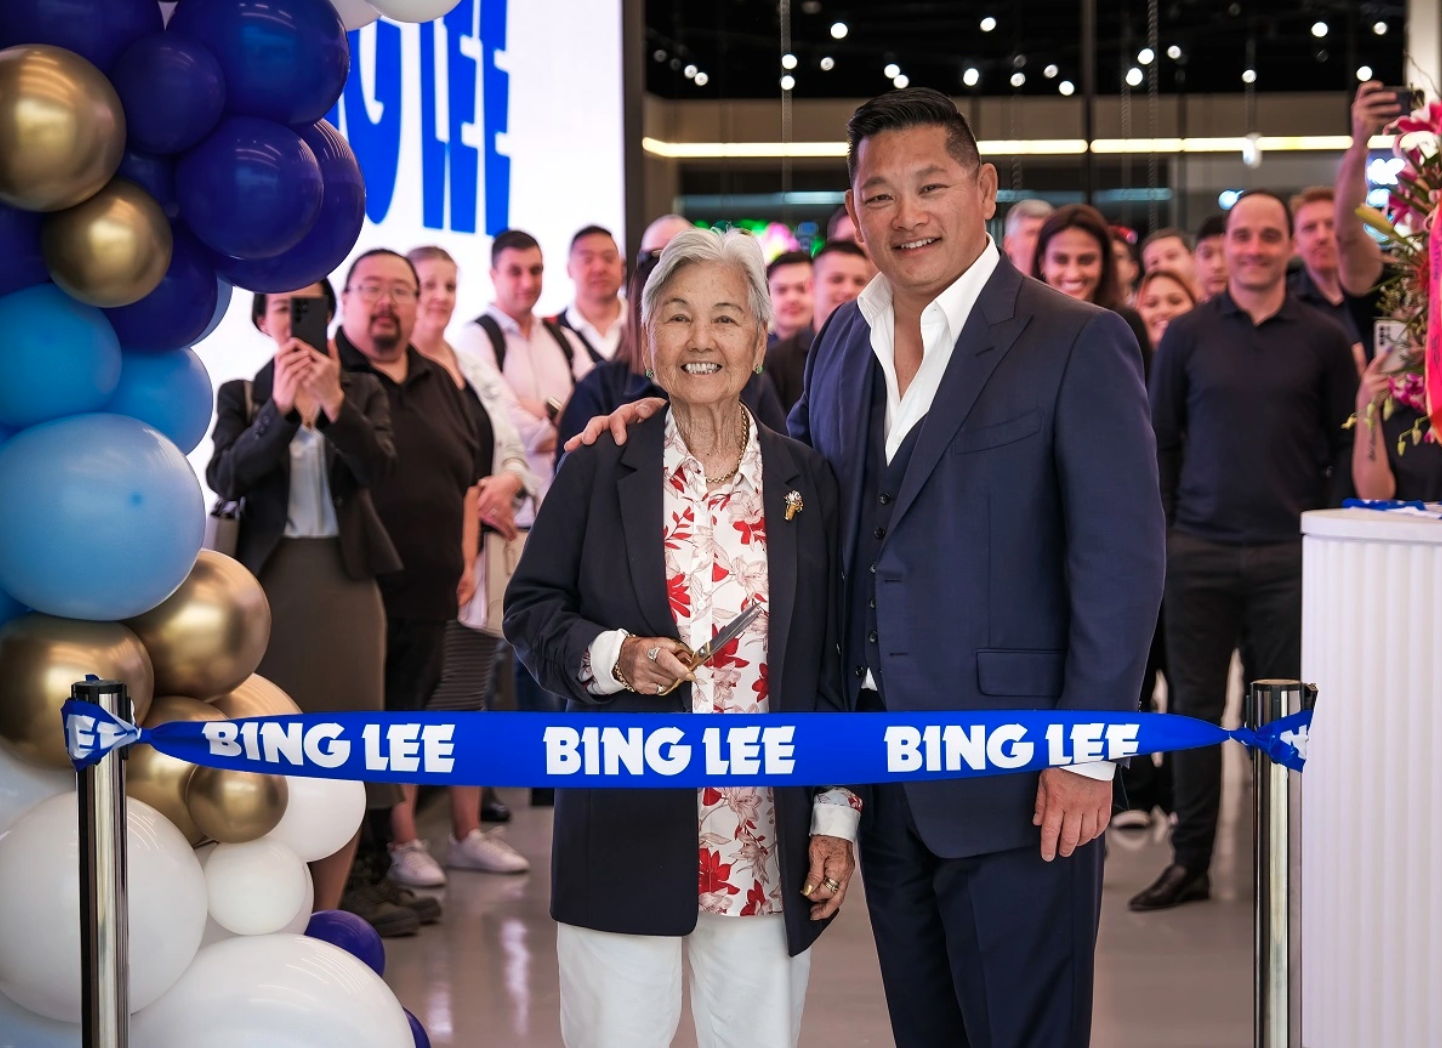 Bing Lee Opens New Sydney Store, Featuring 10.5 Metre Long Screen –  channelnews